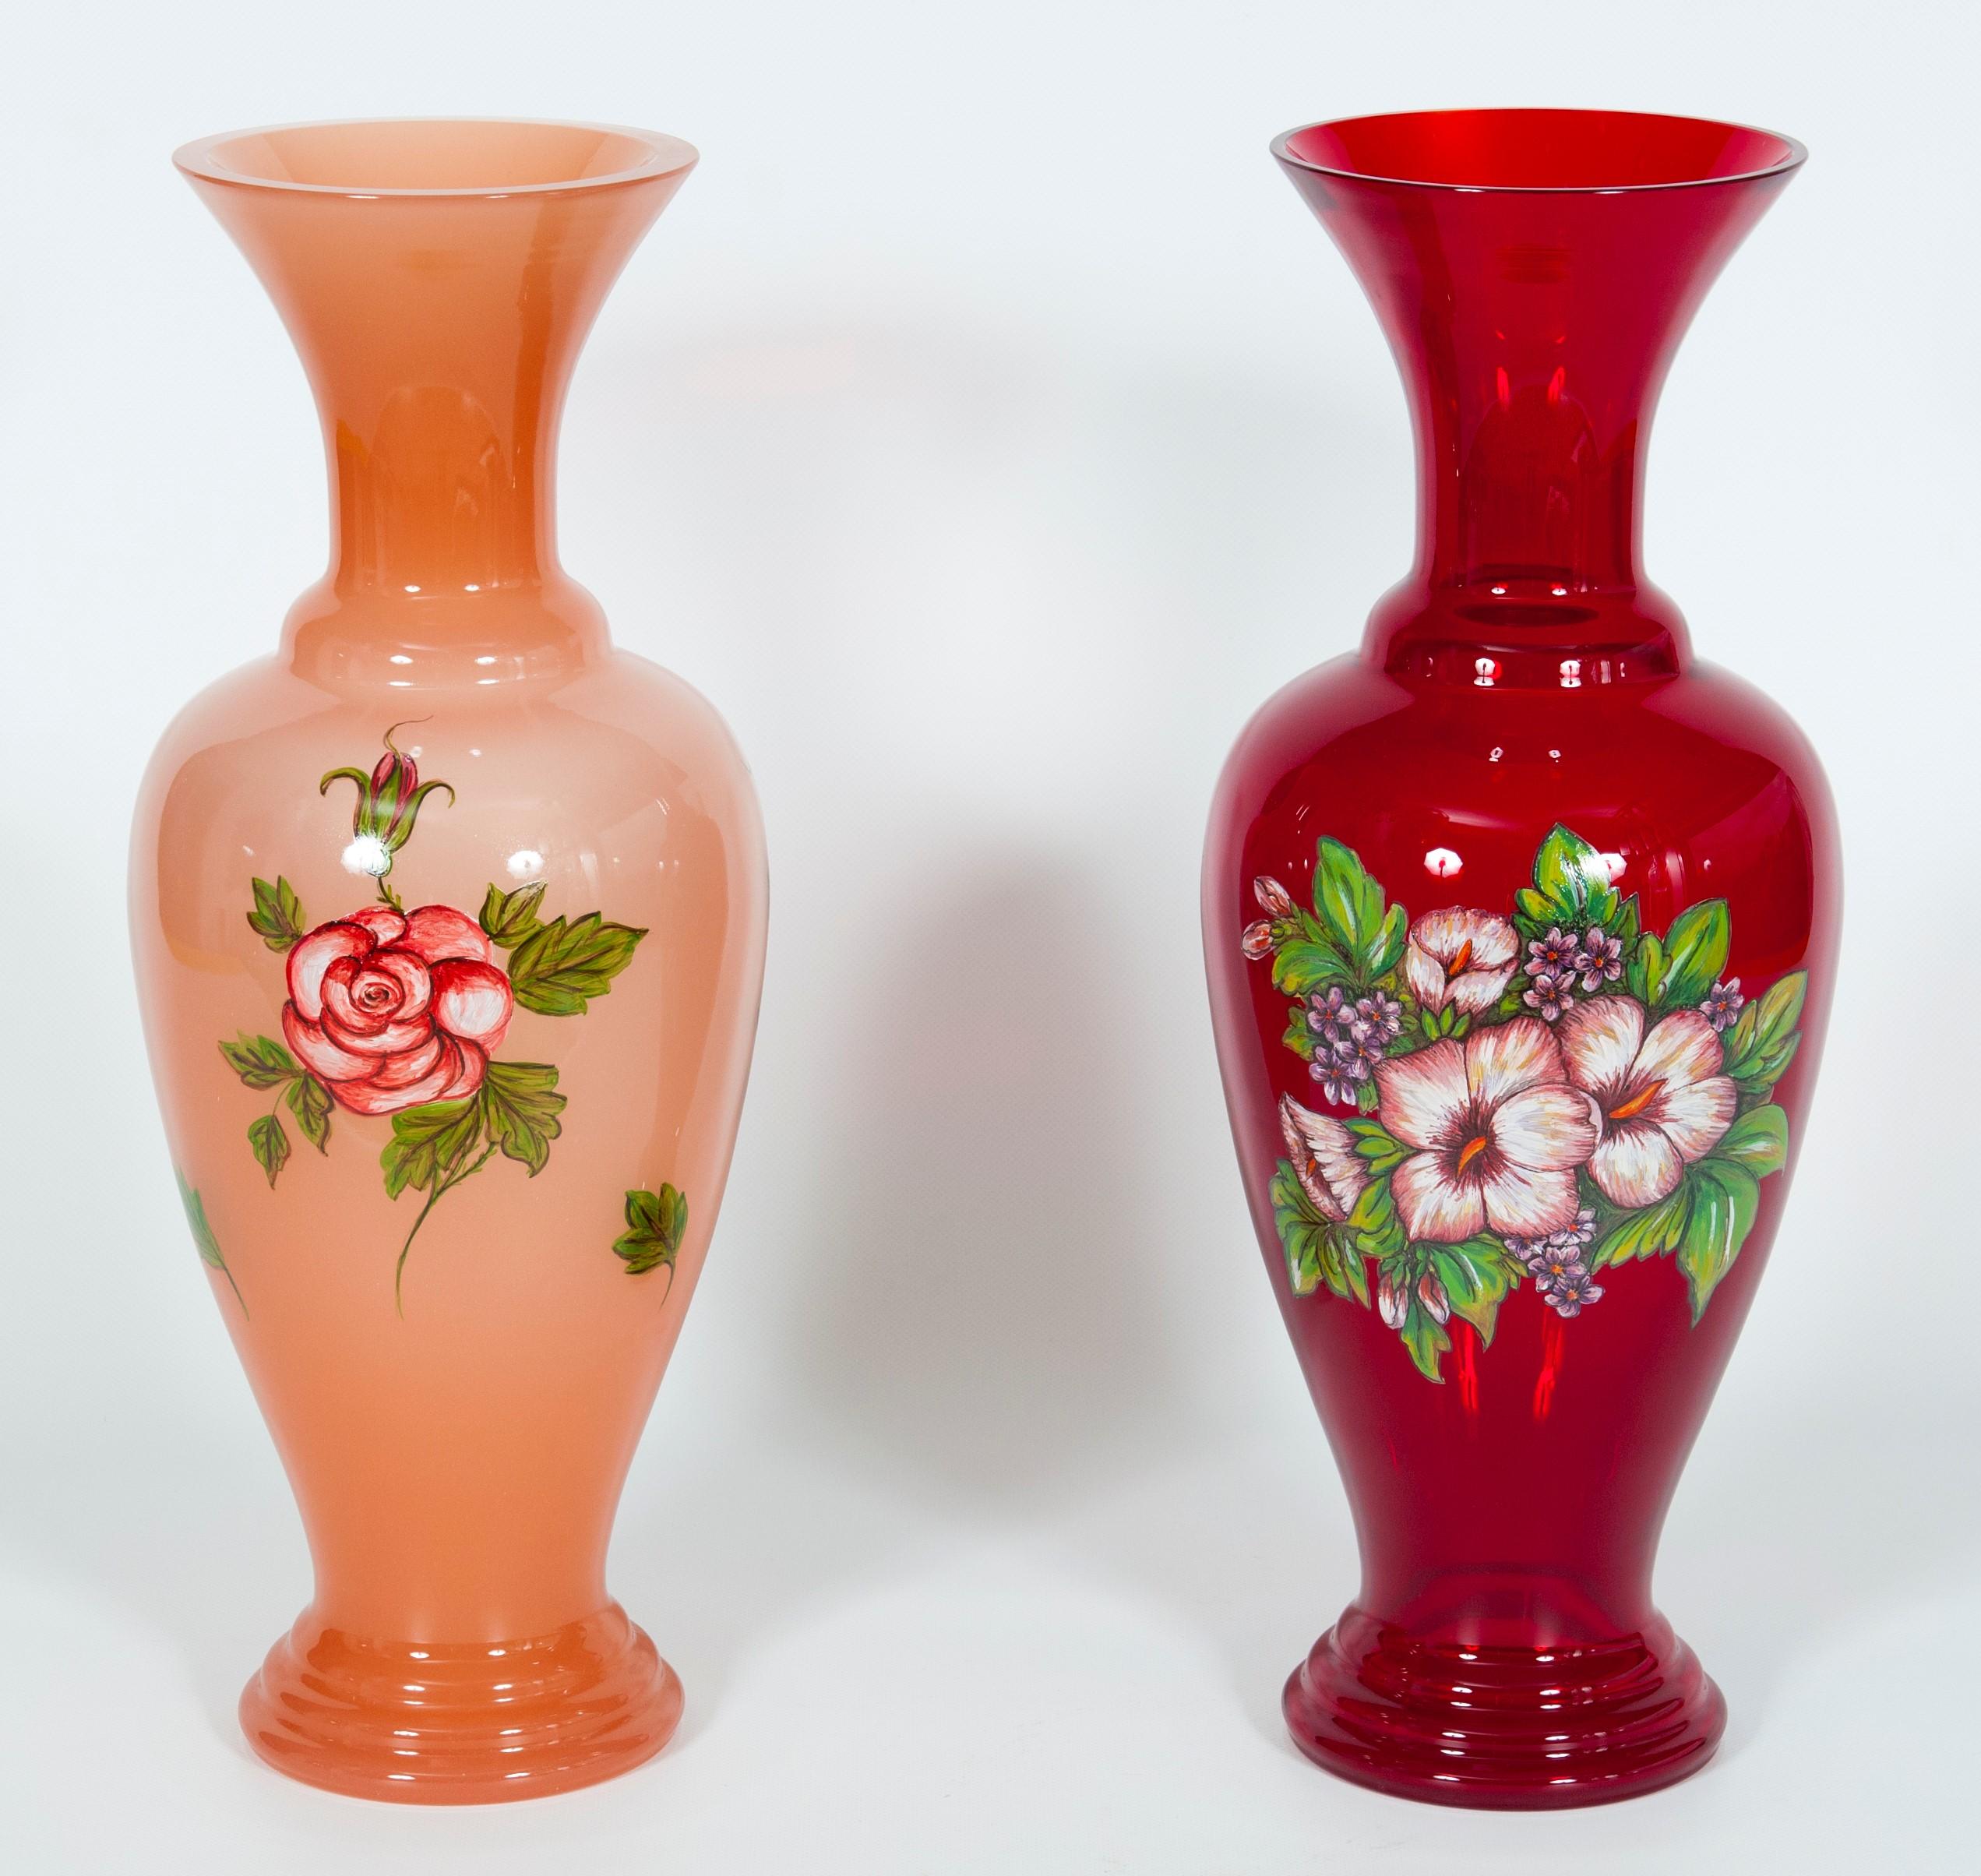 Paar rosa und rote Blumenvasen aus Murano-Glas, Kunstmalerei, 1990er Jahre, Italien.
Dieses außergewöhnliche Paar Glasvasen wurde in den 1990er Jahren auf der italienischen Insel Murano in reiner Handarbeit hergestellt, wobei die dortigen